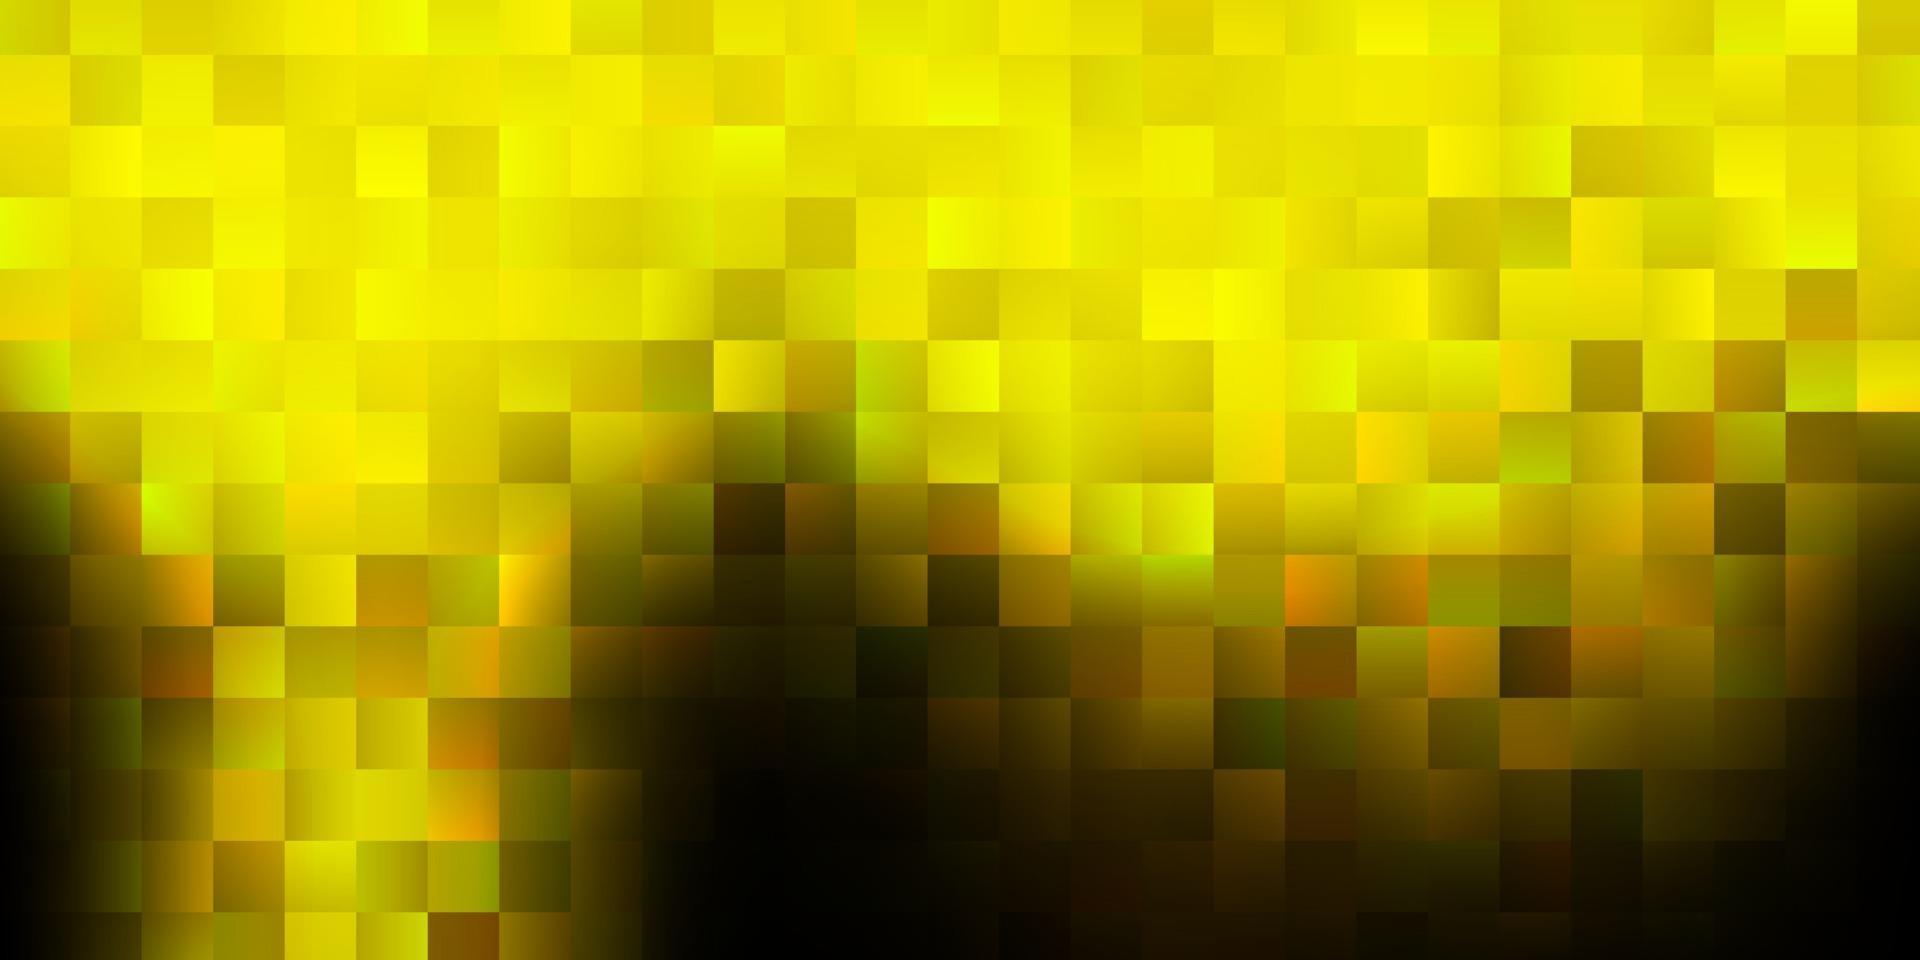 couverture de vecteur vert foncé, jaune dans un style carré.